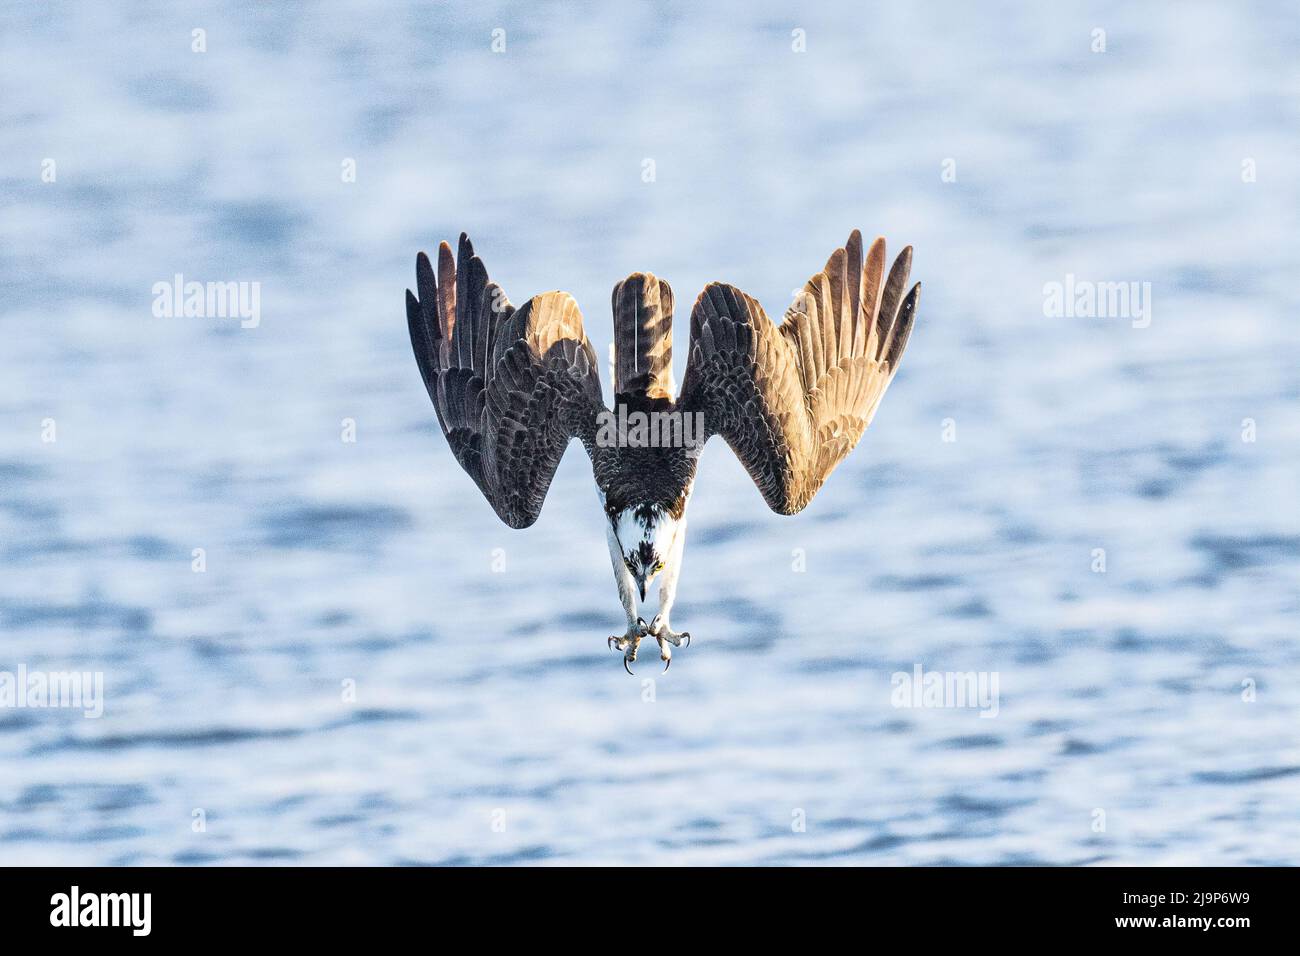 Il fotografo statunitense Kathy Wade ha catturato il momento in cui un Osprey, con precisione clinica, ha fatto un'immersione verso la superficie di un lago per catturare un pesce. Gli Osprey sono un tipo di falco unico nella loro dieta di pesce vivo e nella loro capacità di tuffarsi nell'acqua per catturarli. Emigrano nella parte settentrionale dell'America durante la stagione dell'allevamento e sono molto attivi mentre cacciano pesci per riportare al loro nido per i loro giovani. Wade ha detto '' questo osprey ha alcuni pulcini nuovi di zecca nelle vicinanze, in modo da era stato molto attivo la caccia a questo lago locale, non lontano dalla nostra casa. Questi uccelli inverno in S. Foto Stock